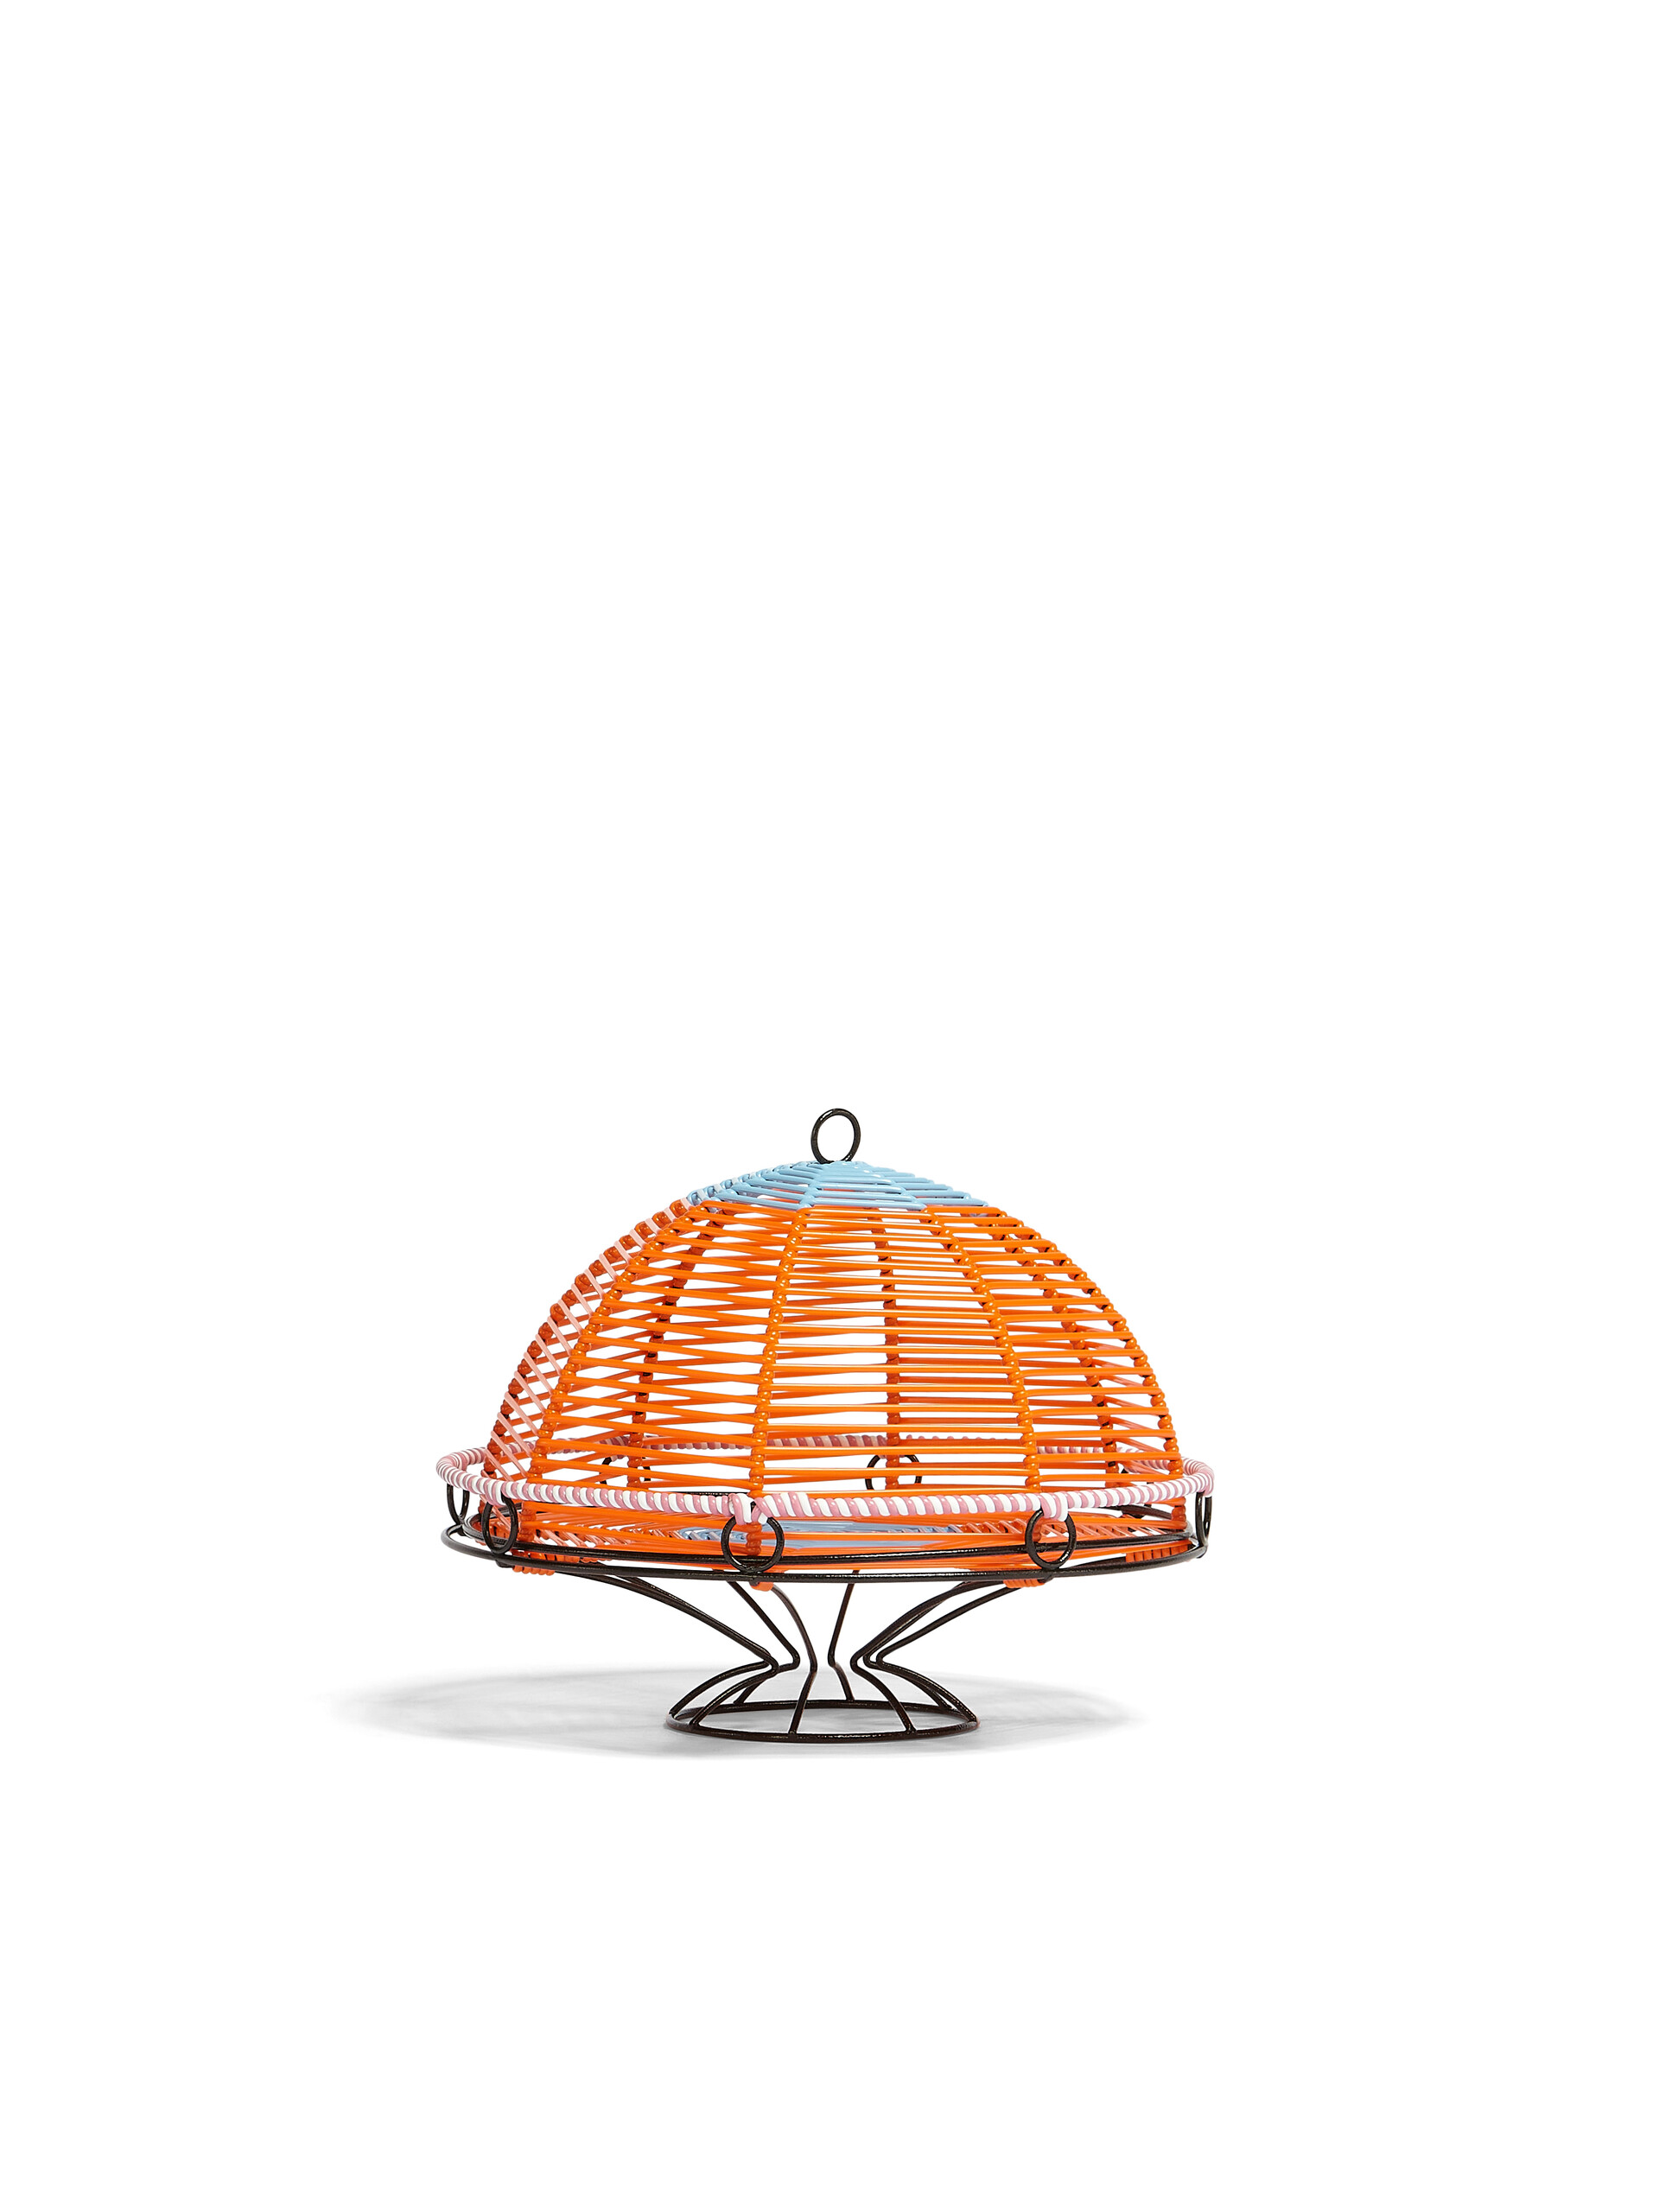 MARNI MARKET cakestand in iron colourblock orange PVC - Home Accessories - Image 2